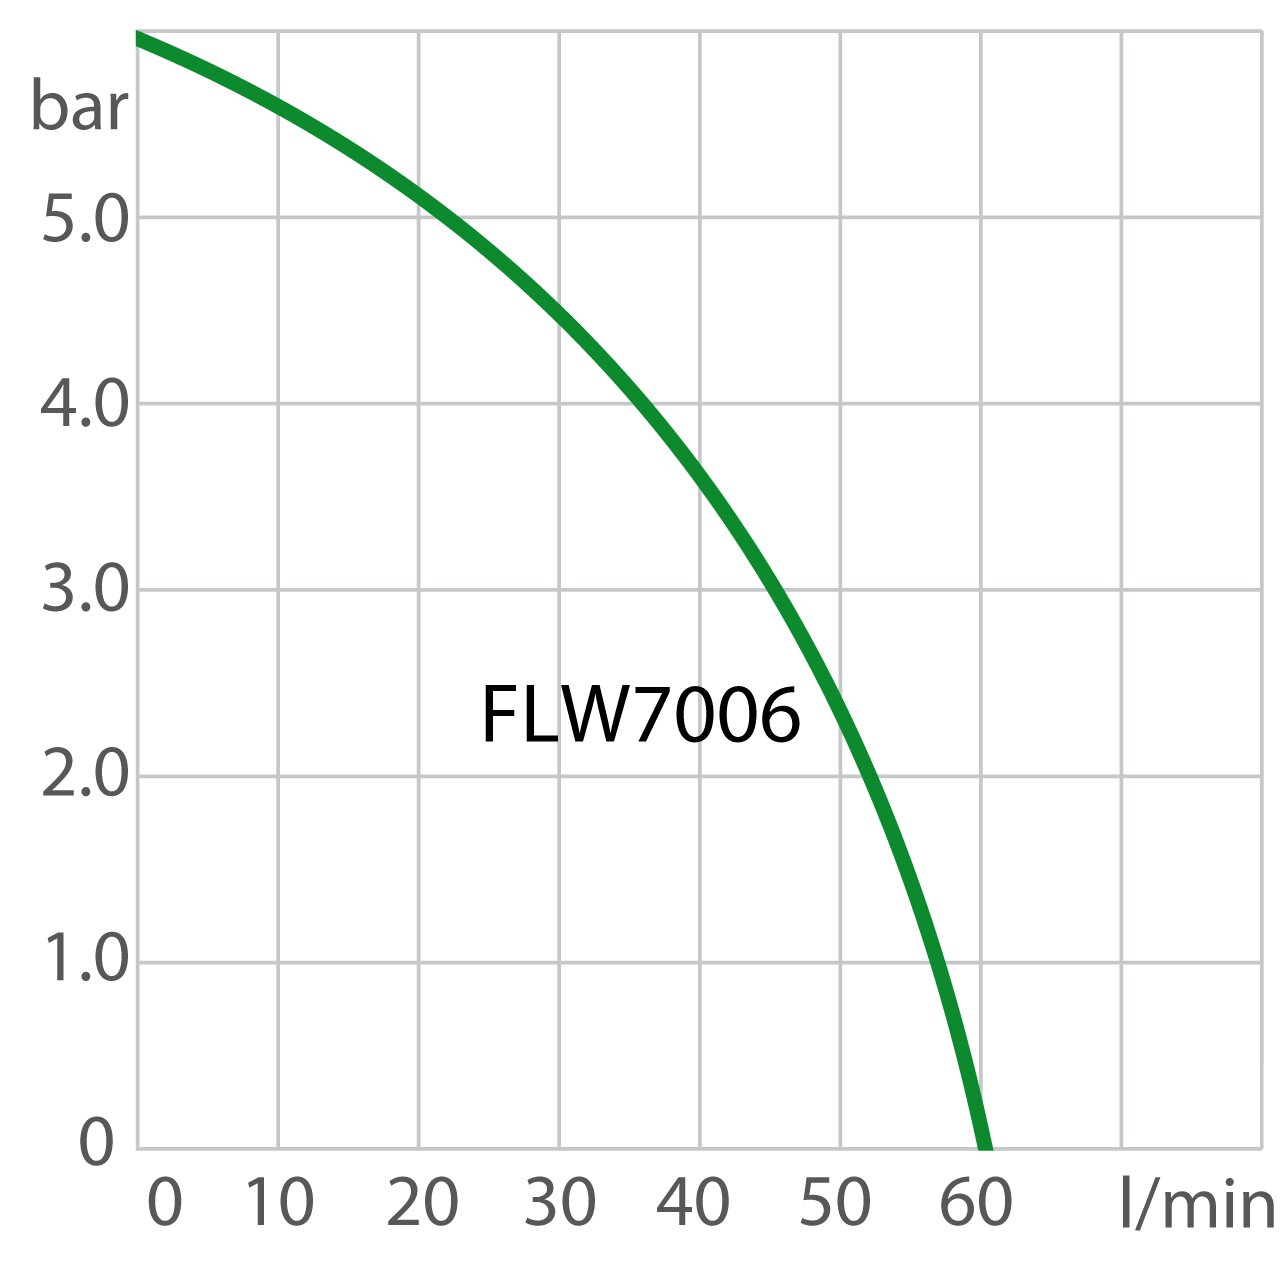 Pump capacity recirculating cooler FLW7006